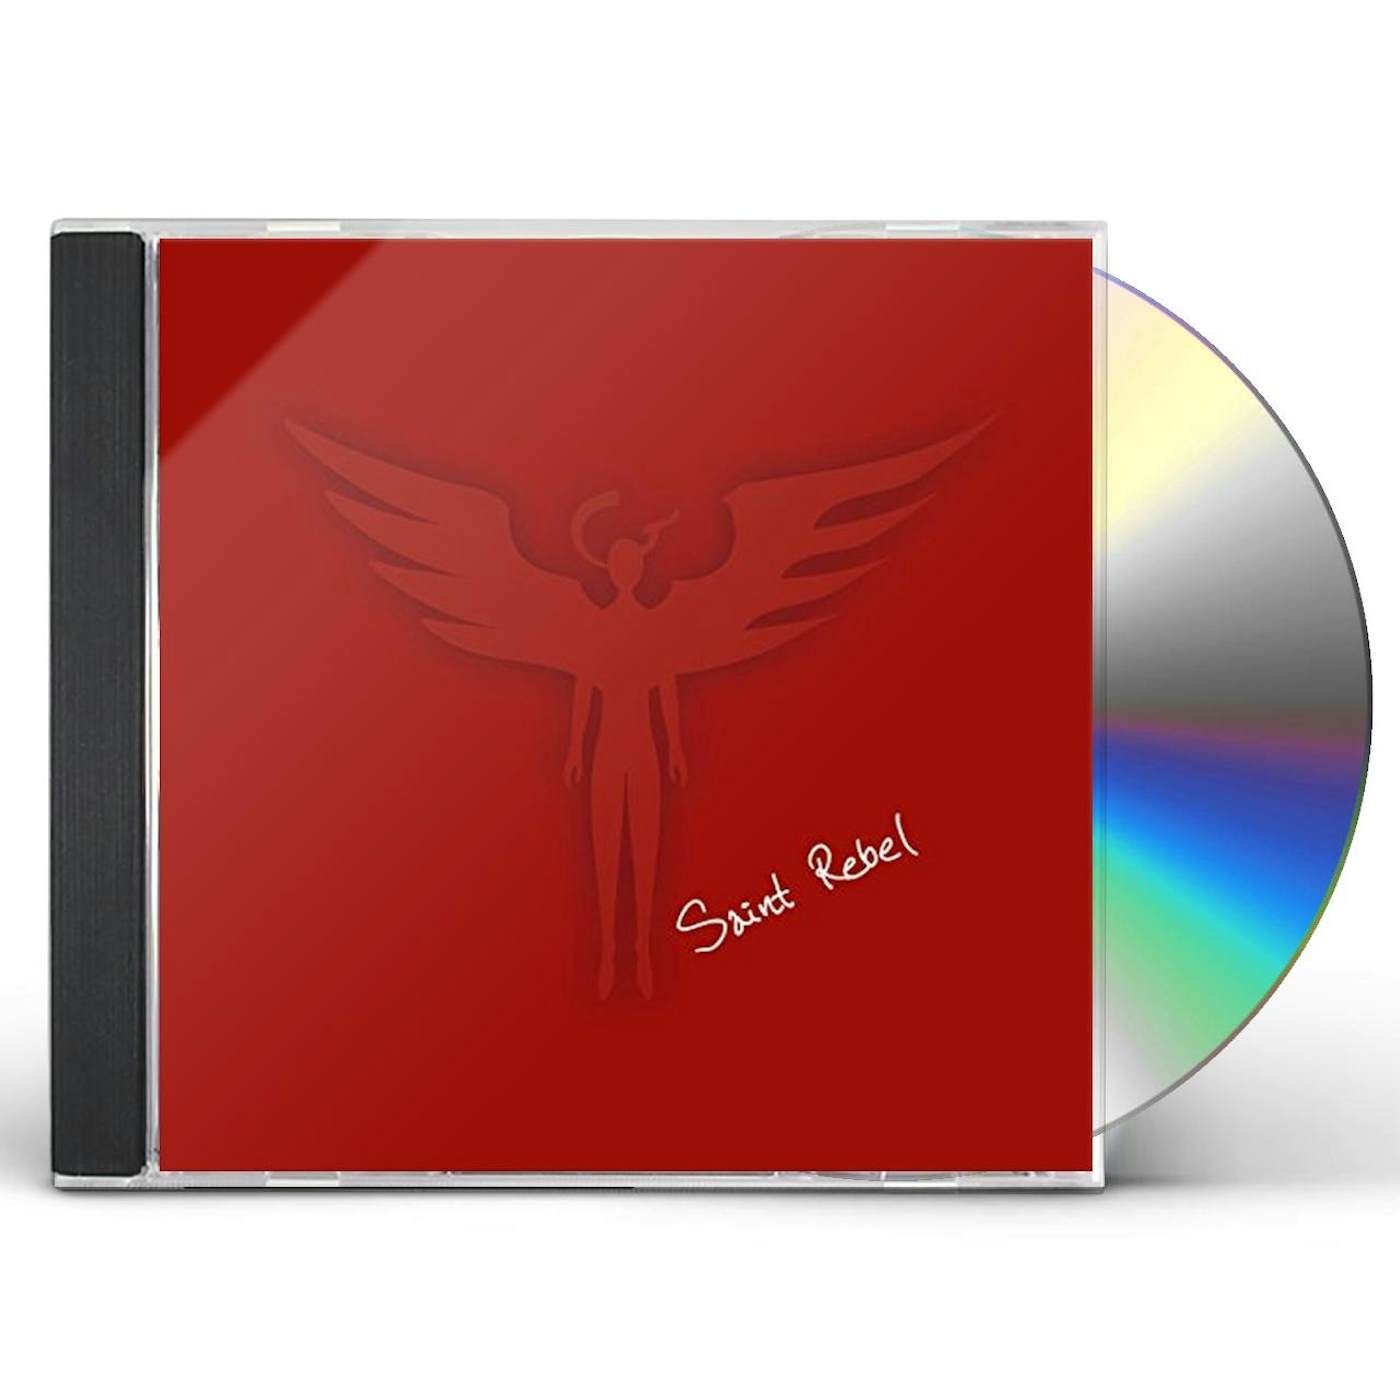 SAINT REBEL CD